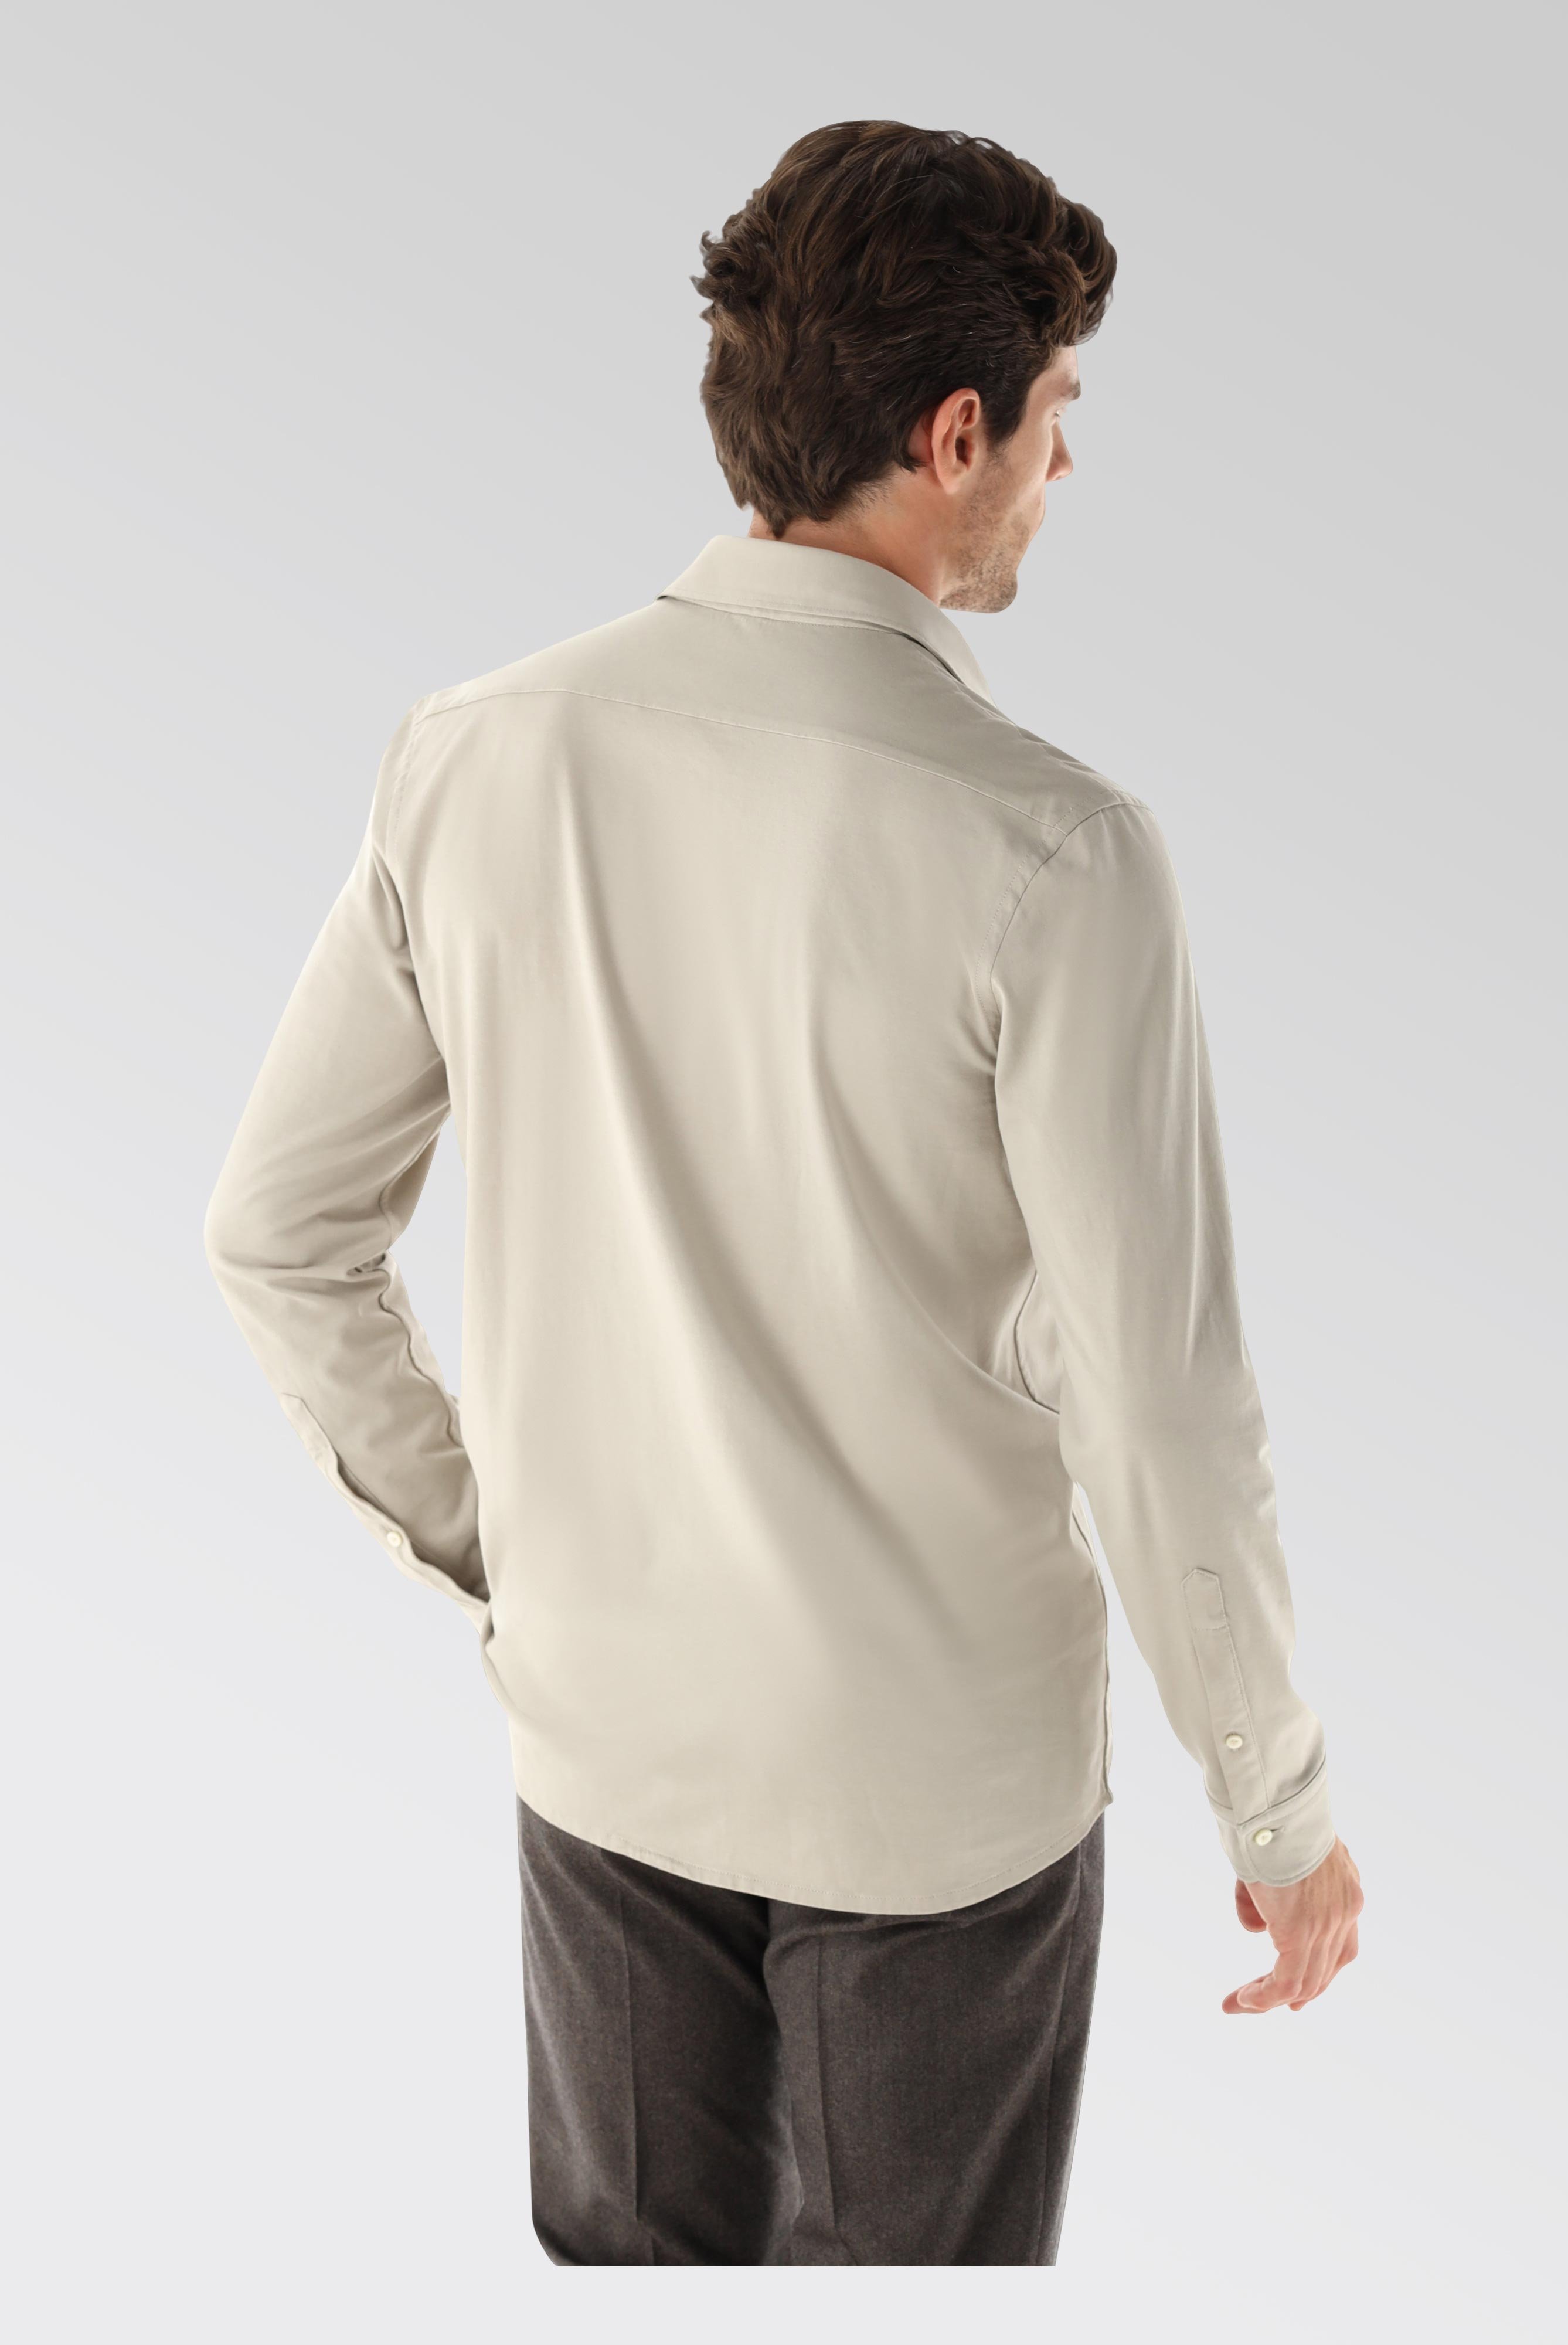 Jersey Hemden+Jersey Shirt Urban Look Slim Fit+20.1651.UC.Z20044.120.S